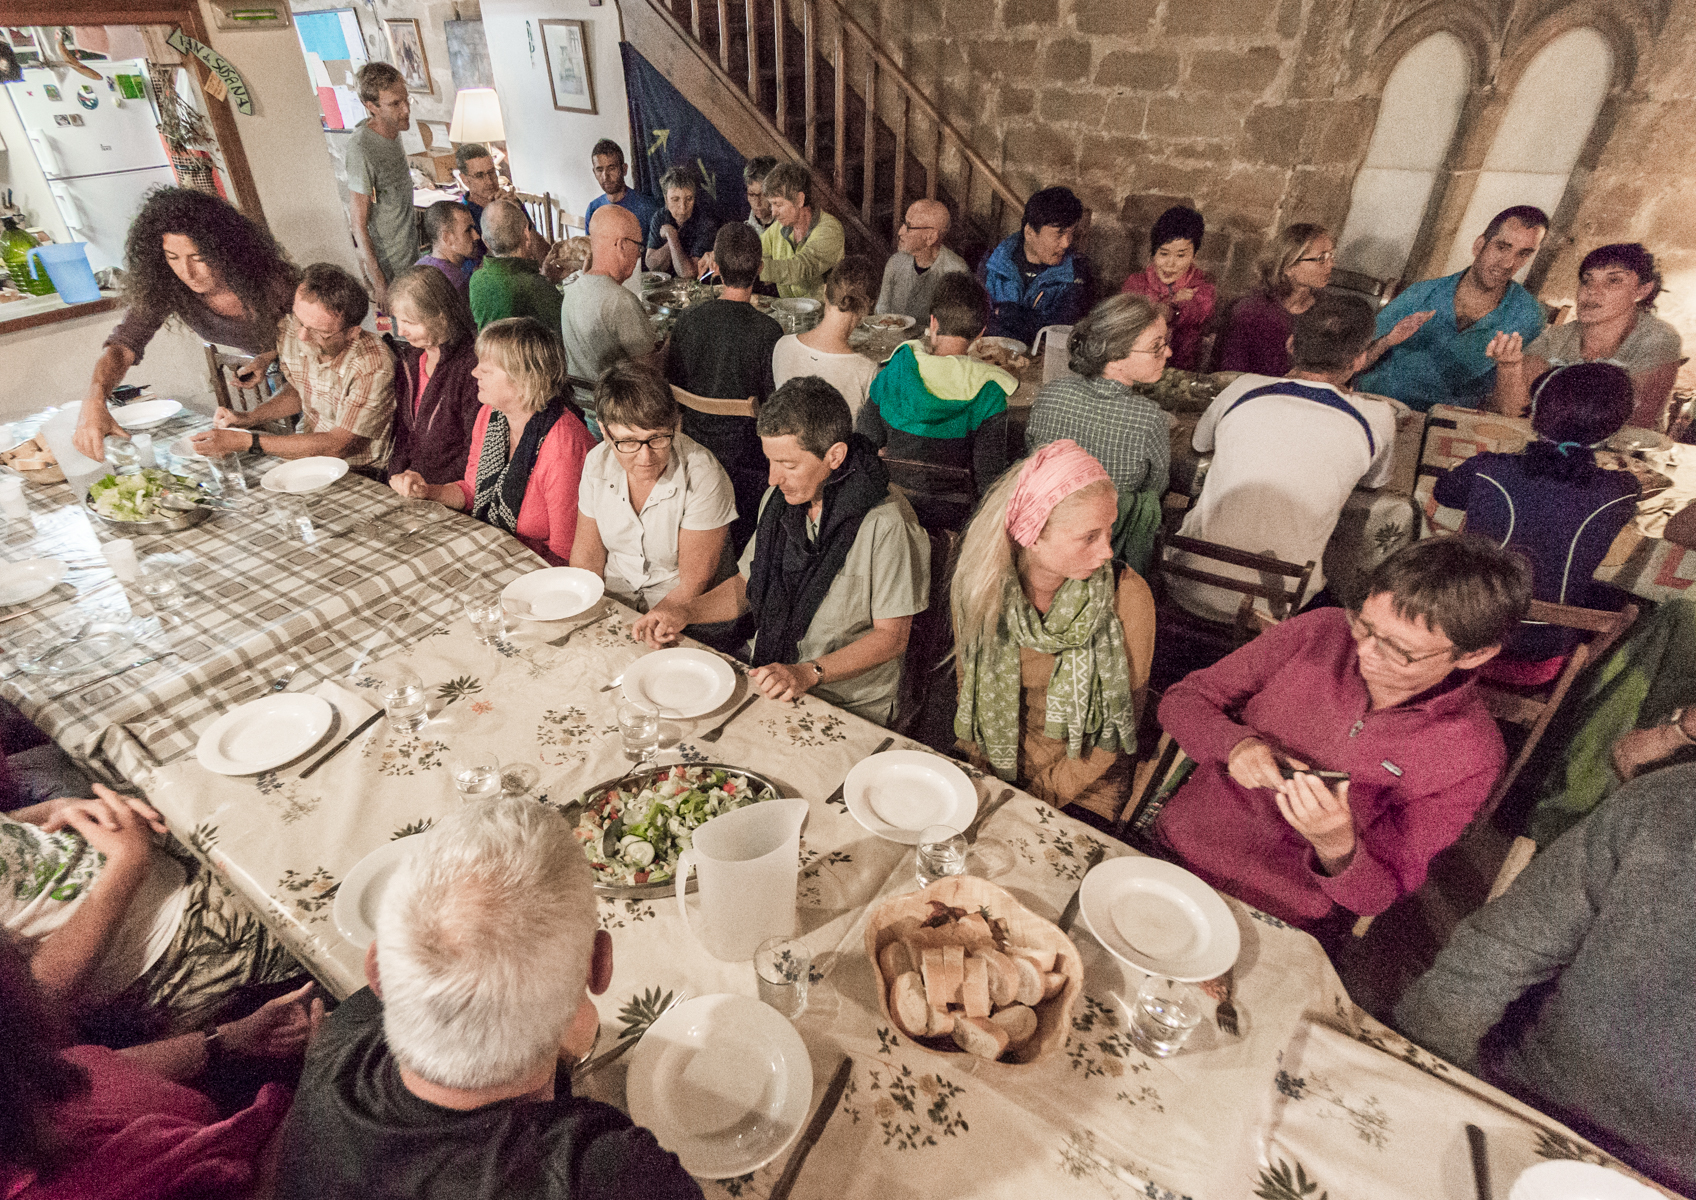 Communal meal for Camino pilgrims at Albergue San Juan Bautista, Granon, Spain | Photo by Mike Hudak